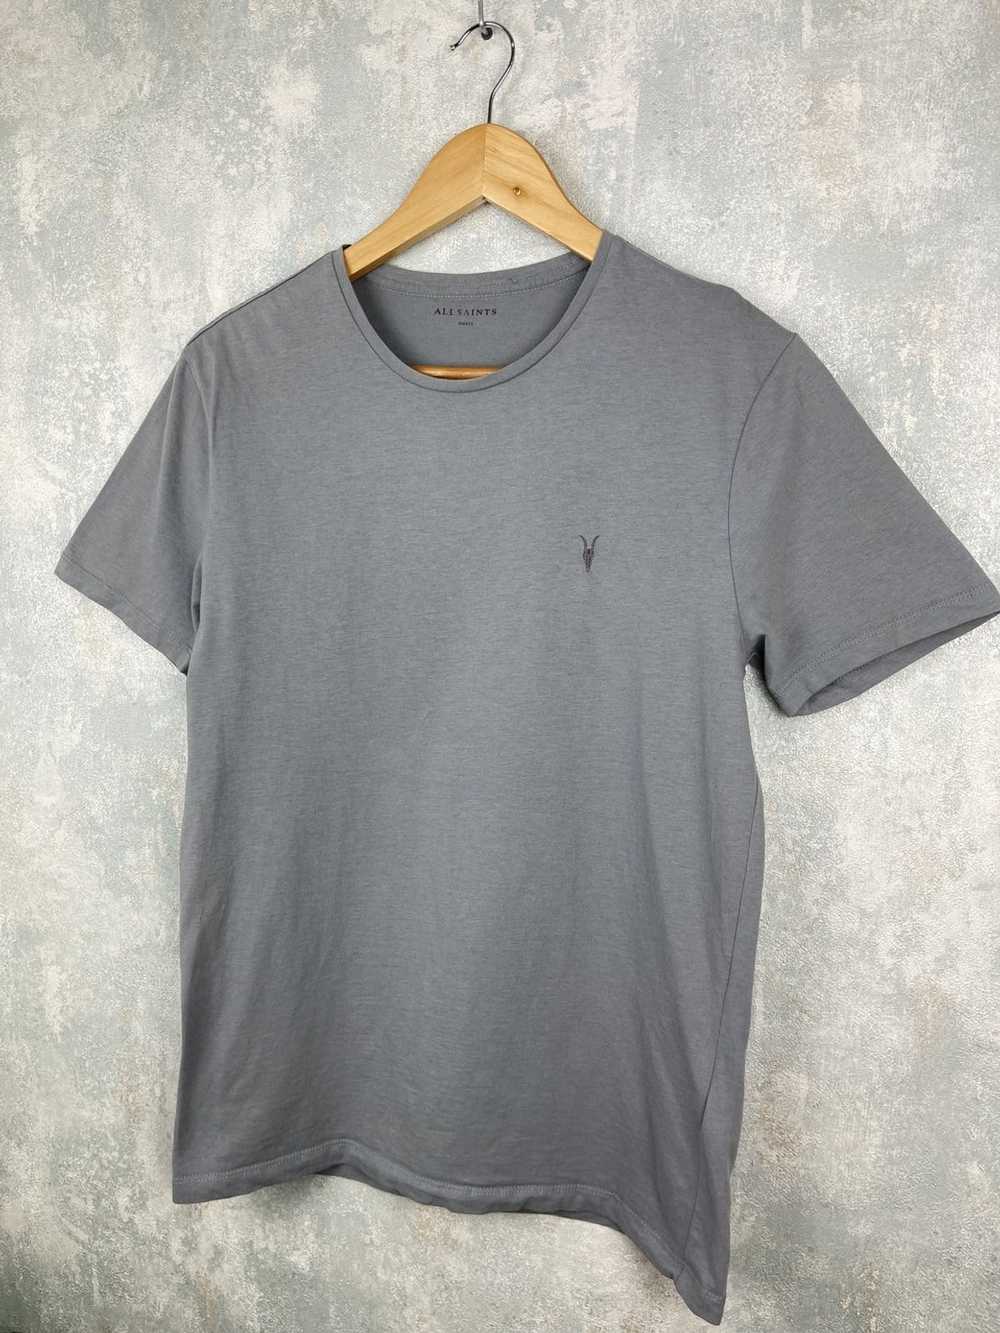 Allsaints AllSaints Grey T-Shirt - image 2